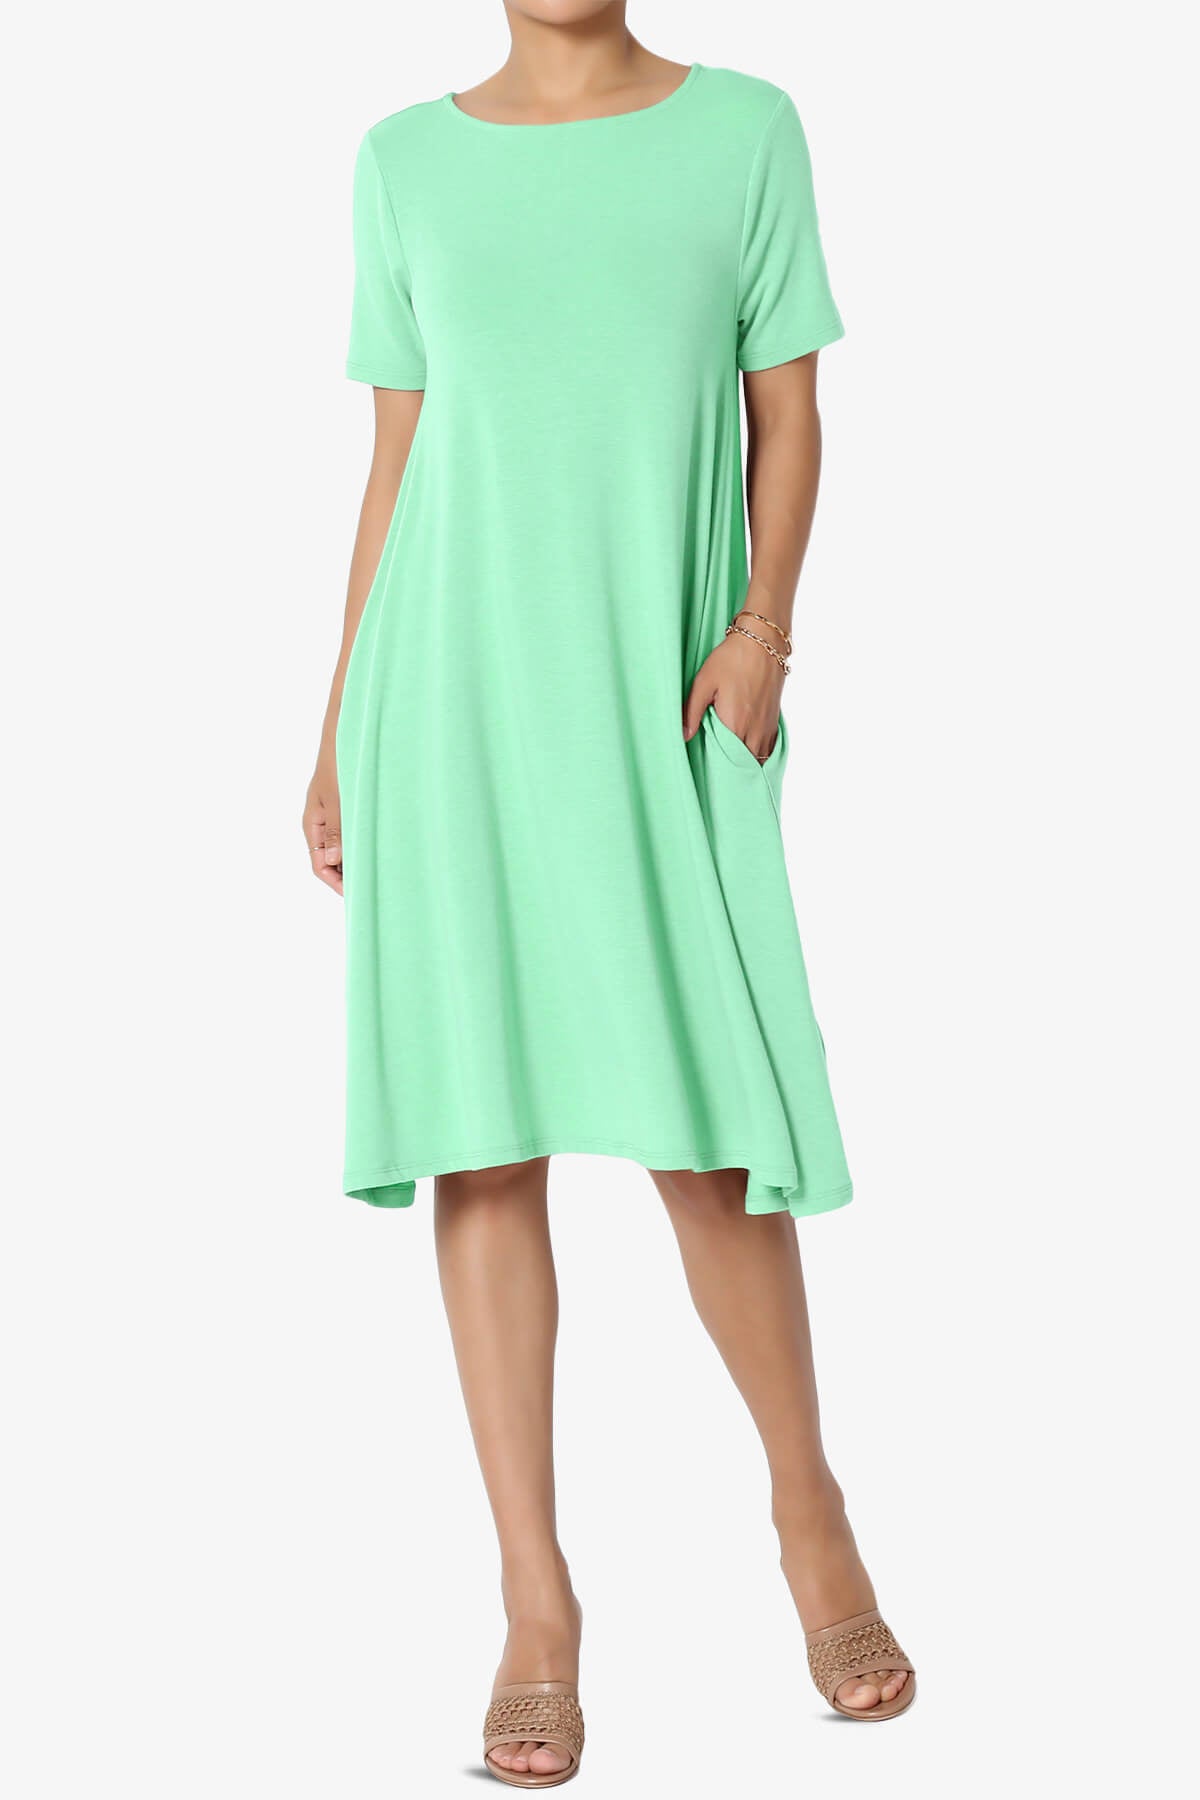 Allie Short Sleeve Jersey A-Line Dress GREEN MINT_1